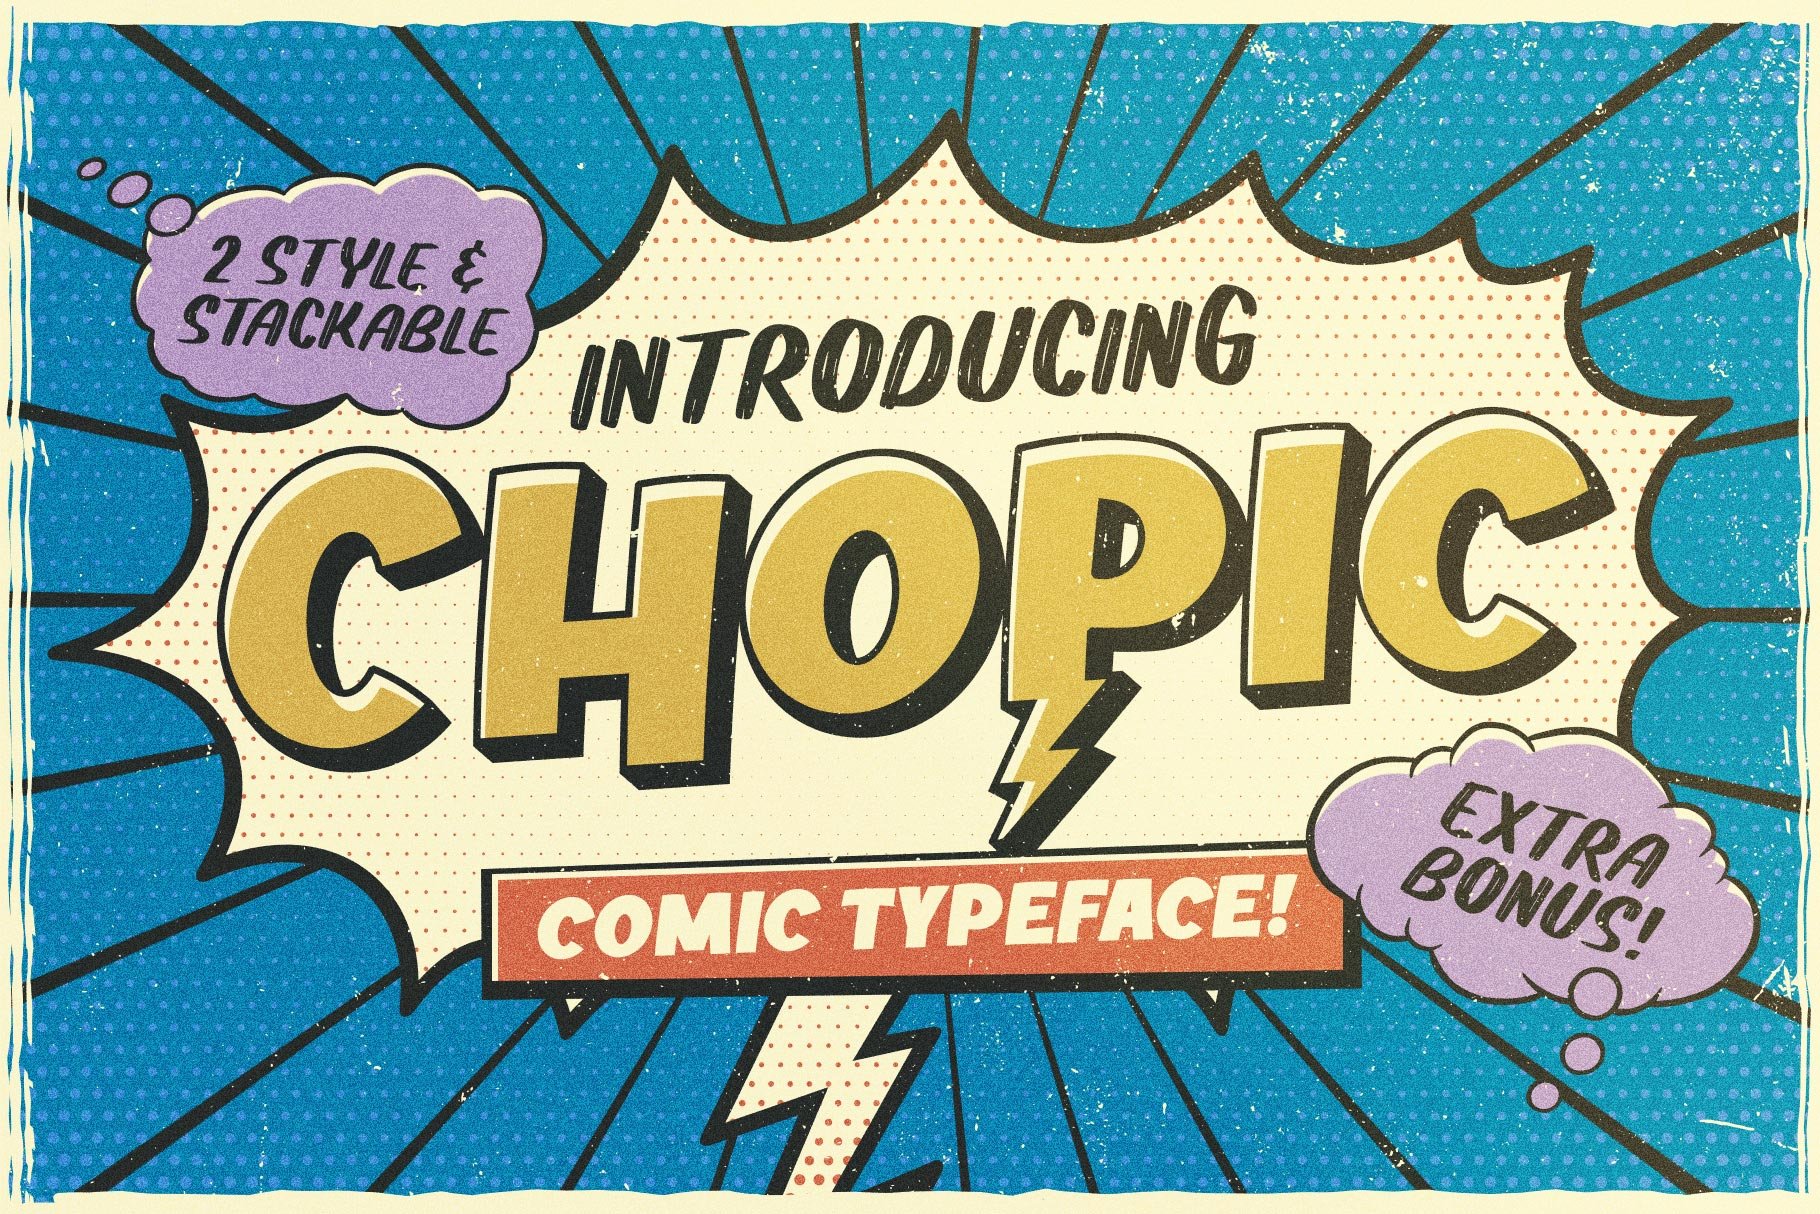 Chopic Typeface - Design Cuts